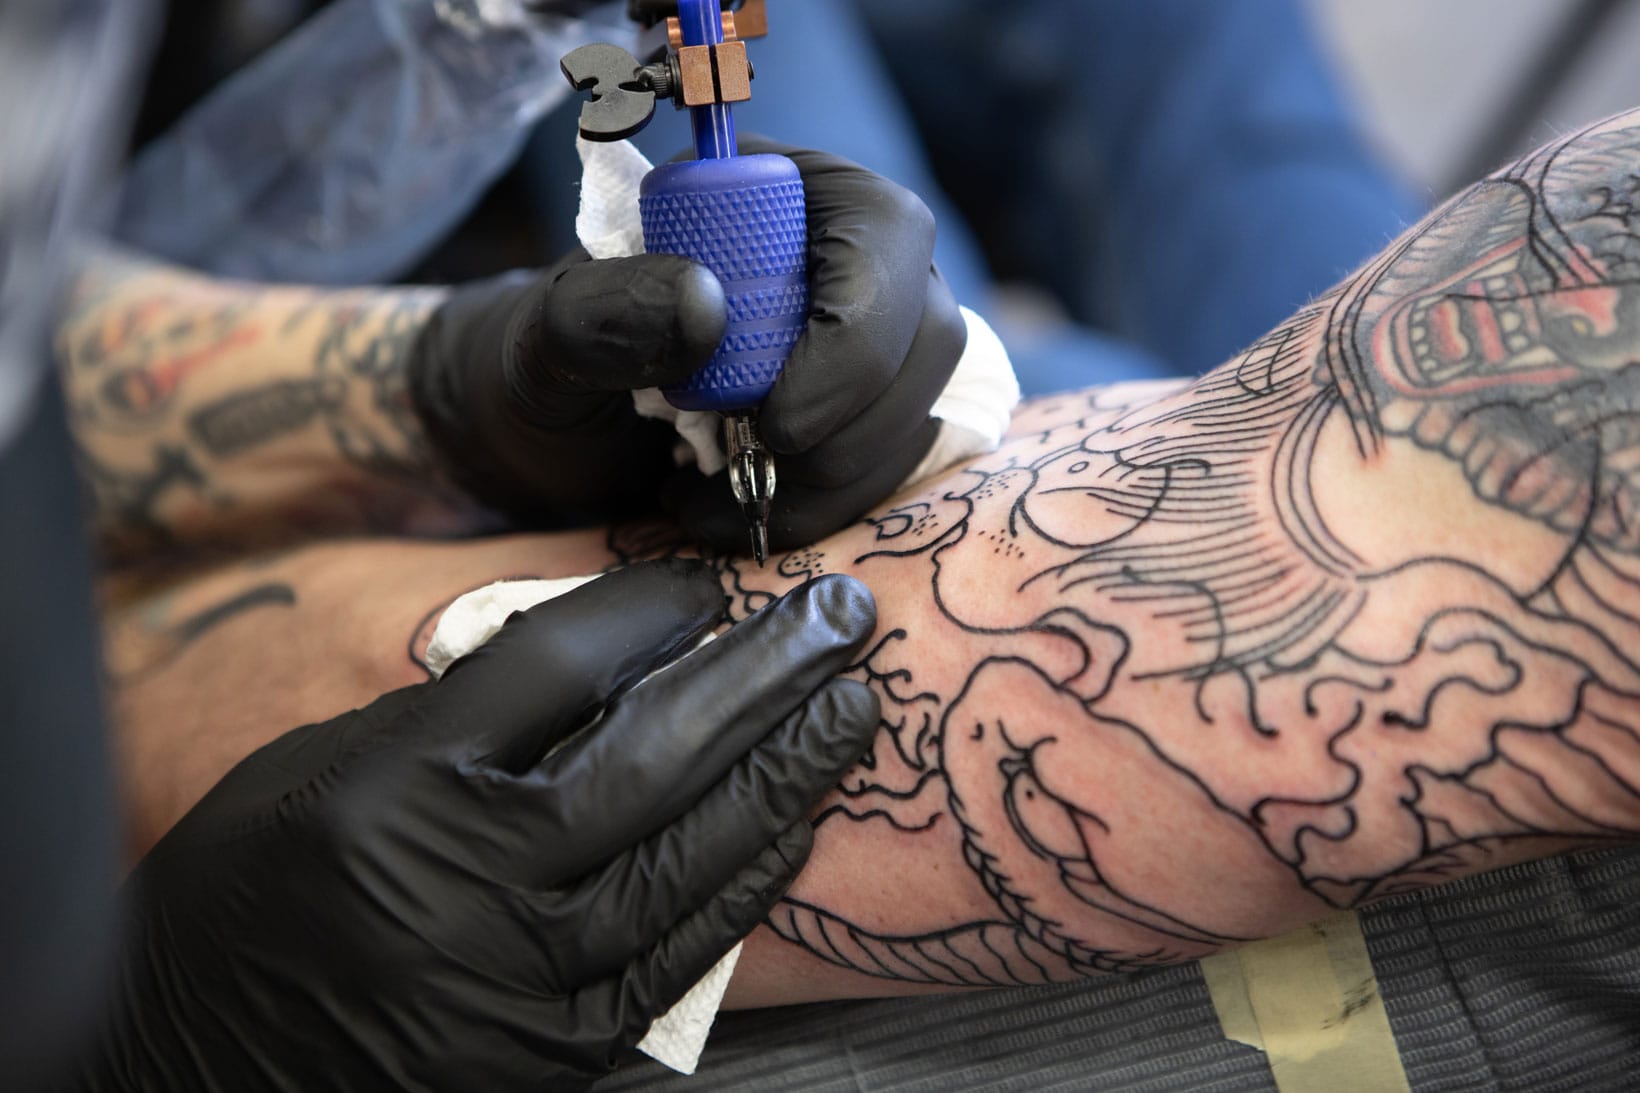 Tattoo artist Jee Sayalero | iNKPPL